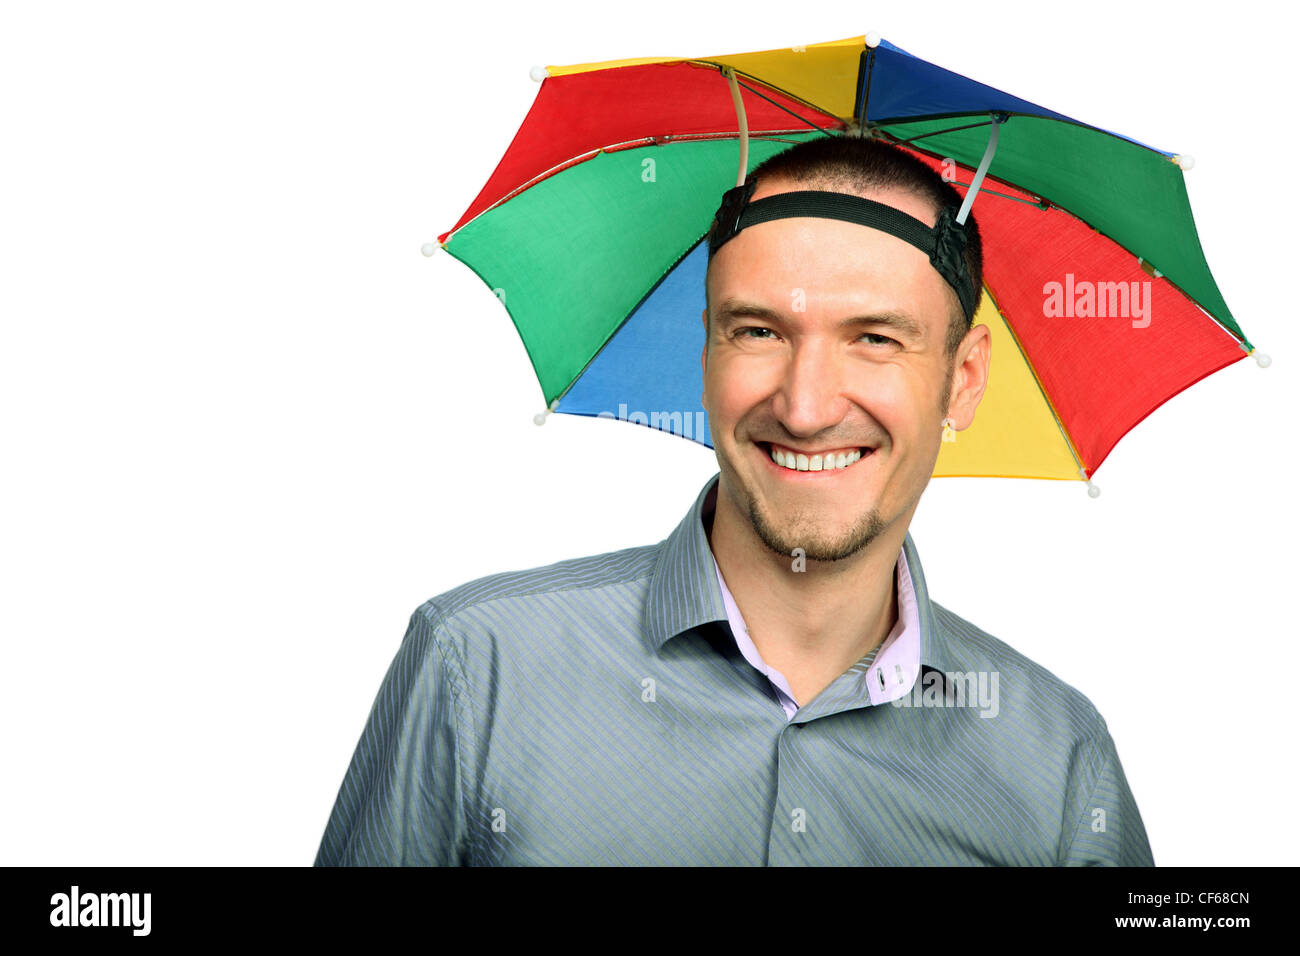 Cappello ombrello immagini e fotografie stock ad alta risoluzione - Alamy